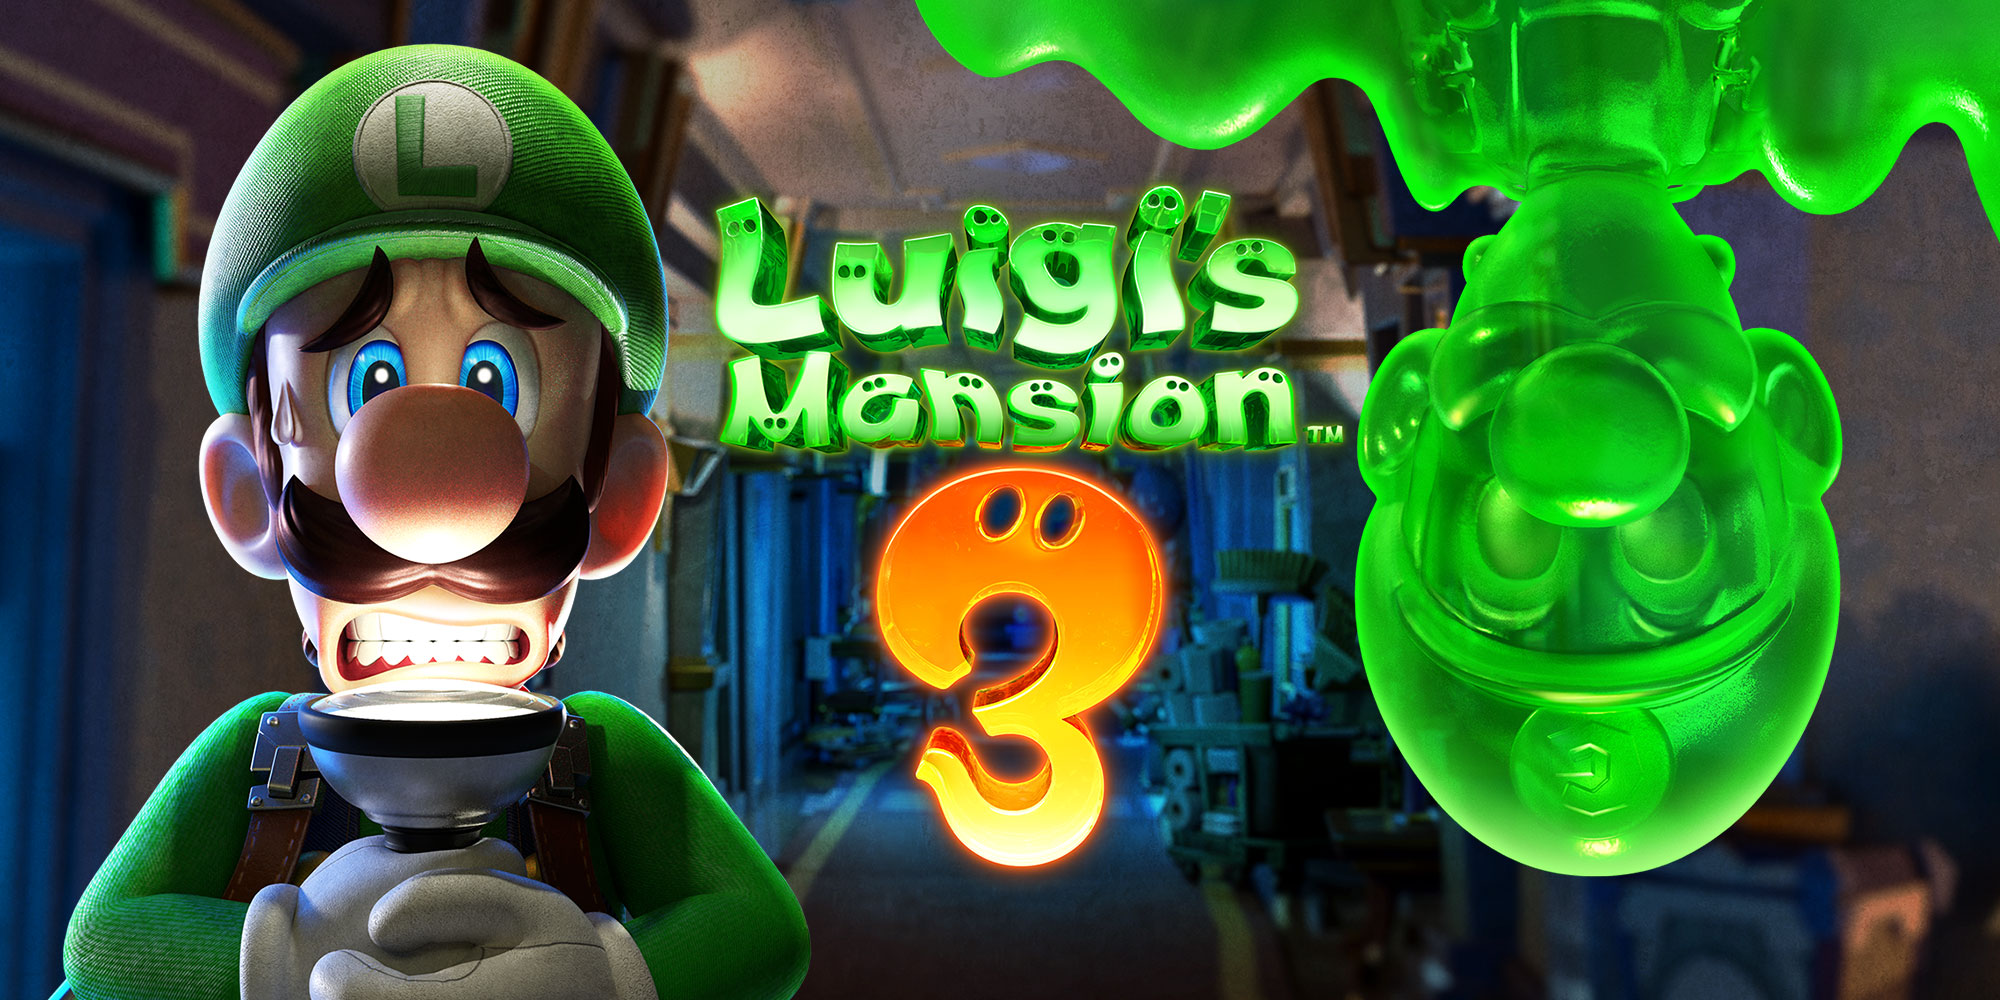 Jetzt wird's gruselig! Luigi's Mansion 3 erscheint am 31. Oktober für Nintendo Switch